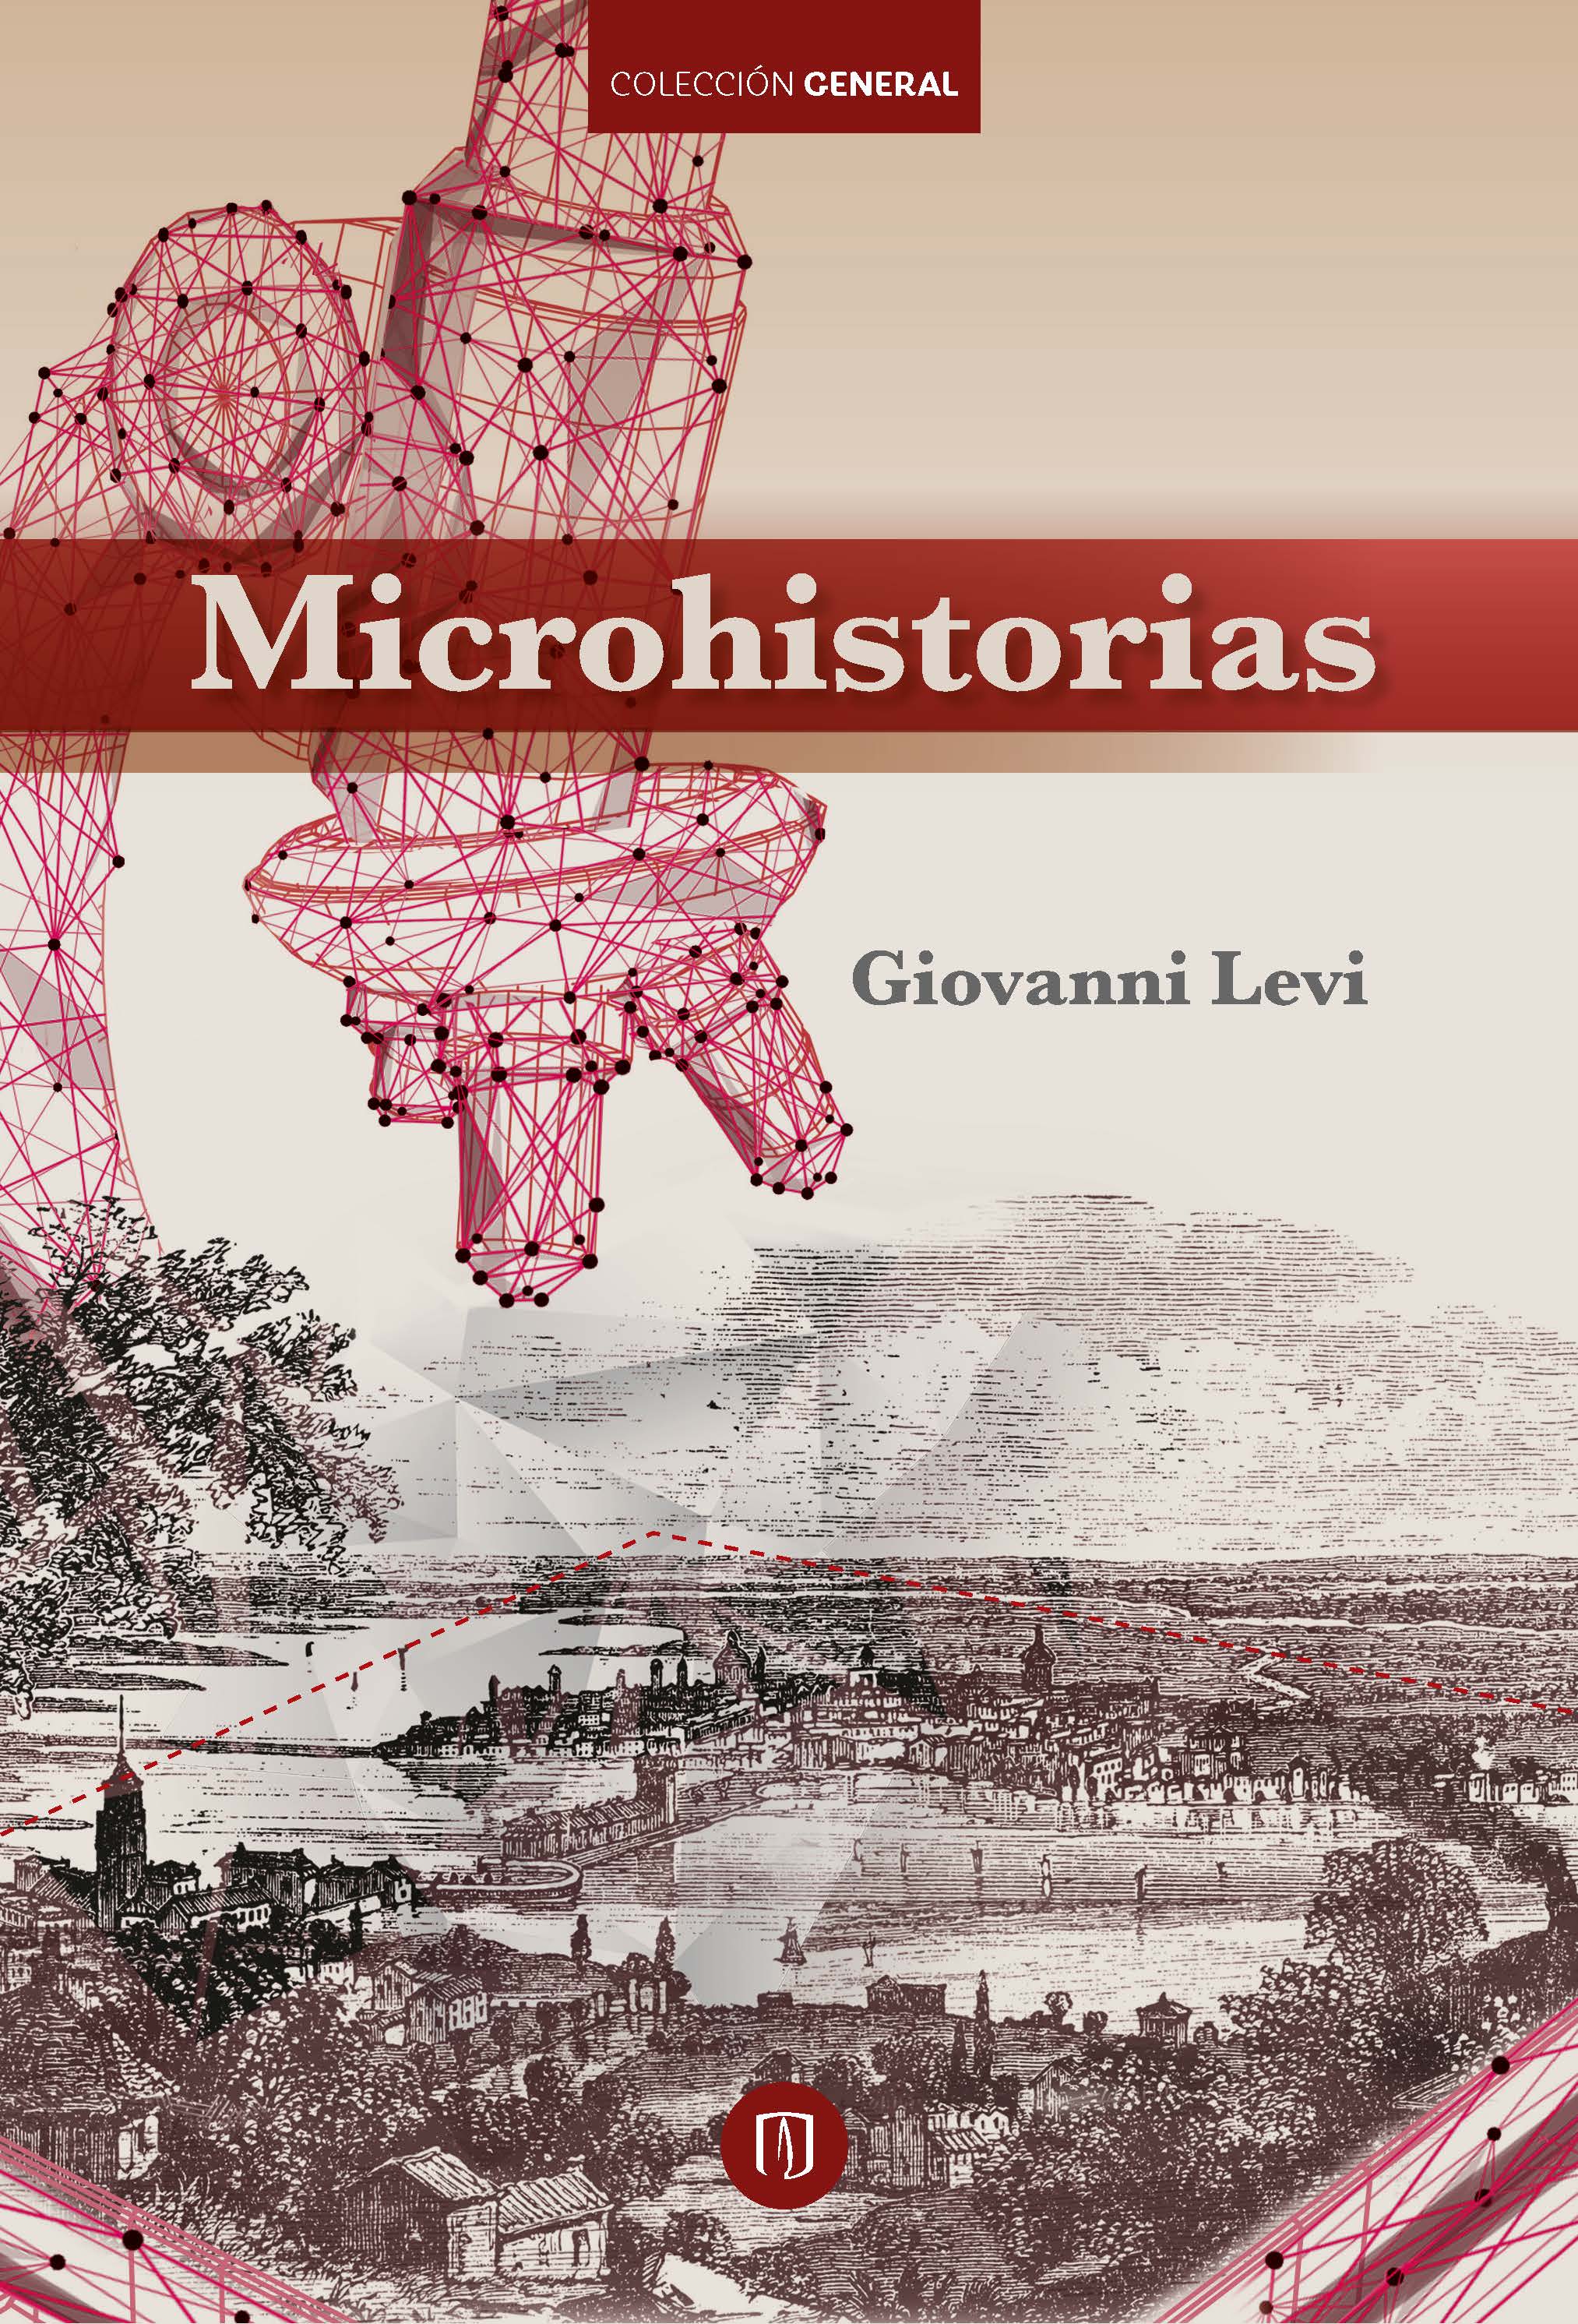 Microhistorias